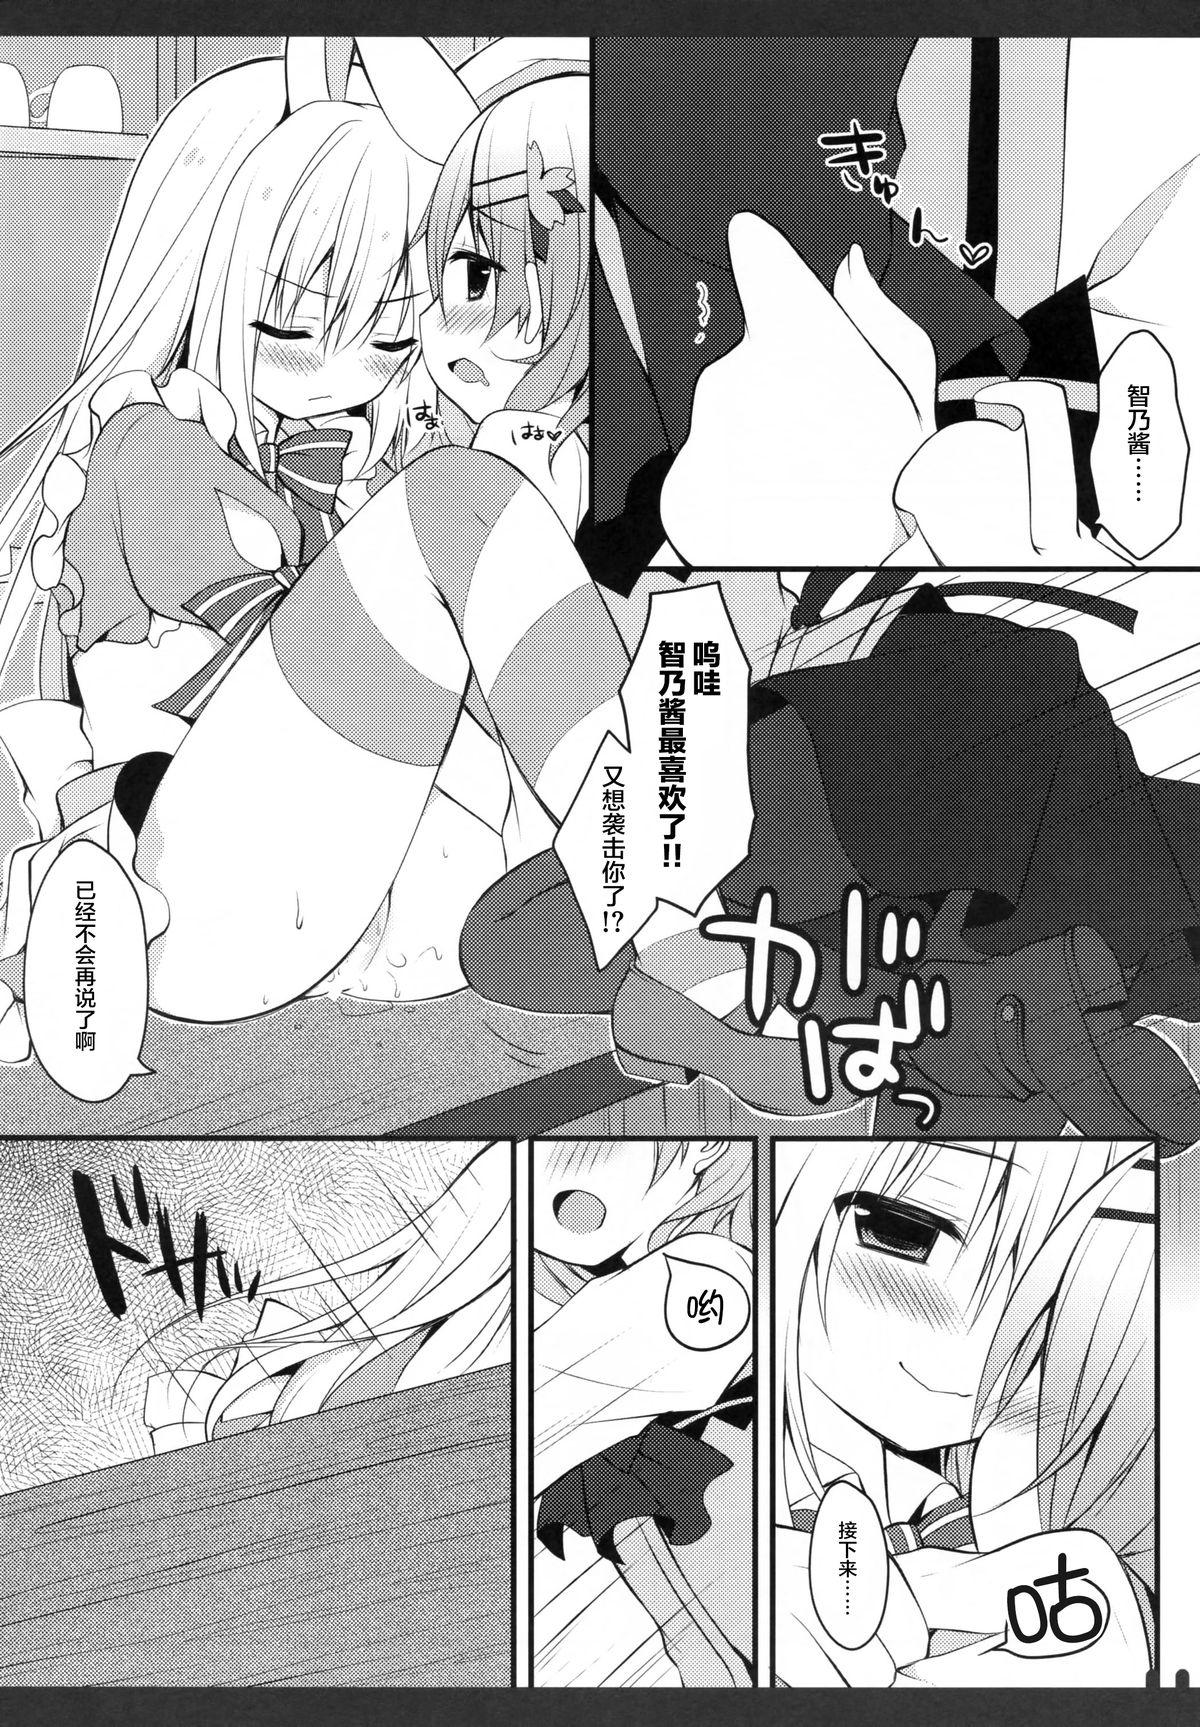 Tits Futari no Himitsu 2 - Gochuumon wa usagi desu ka Delicia - Page 10